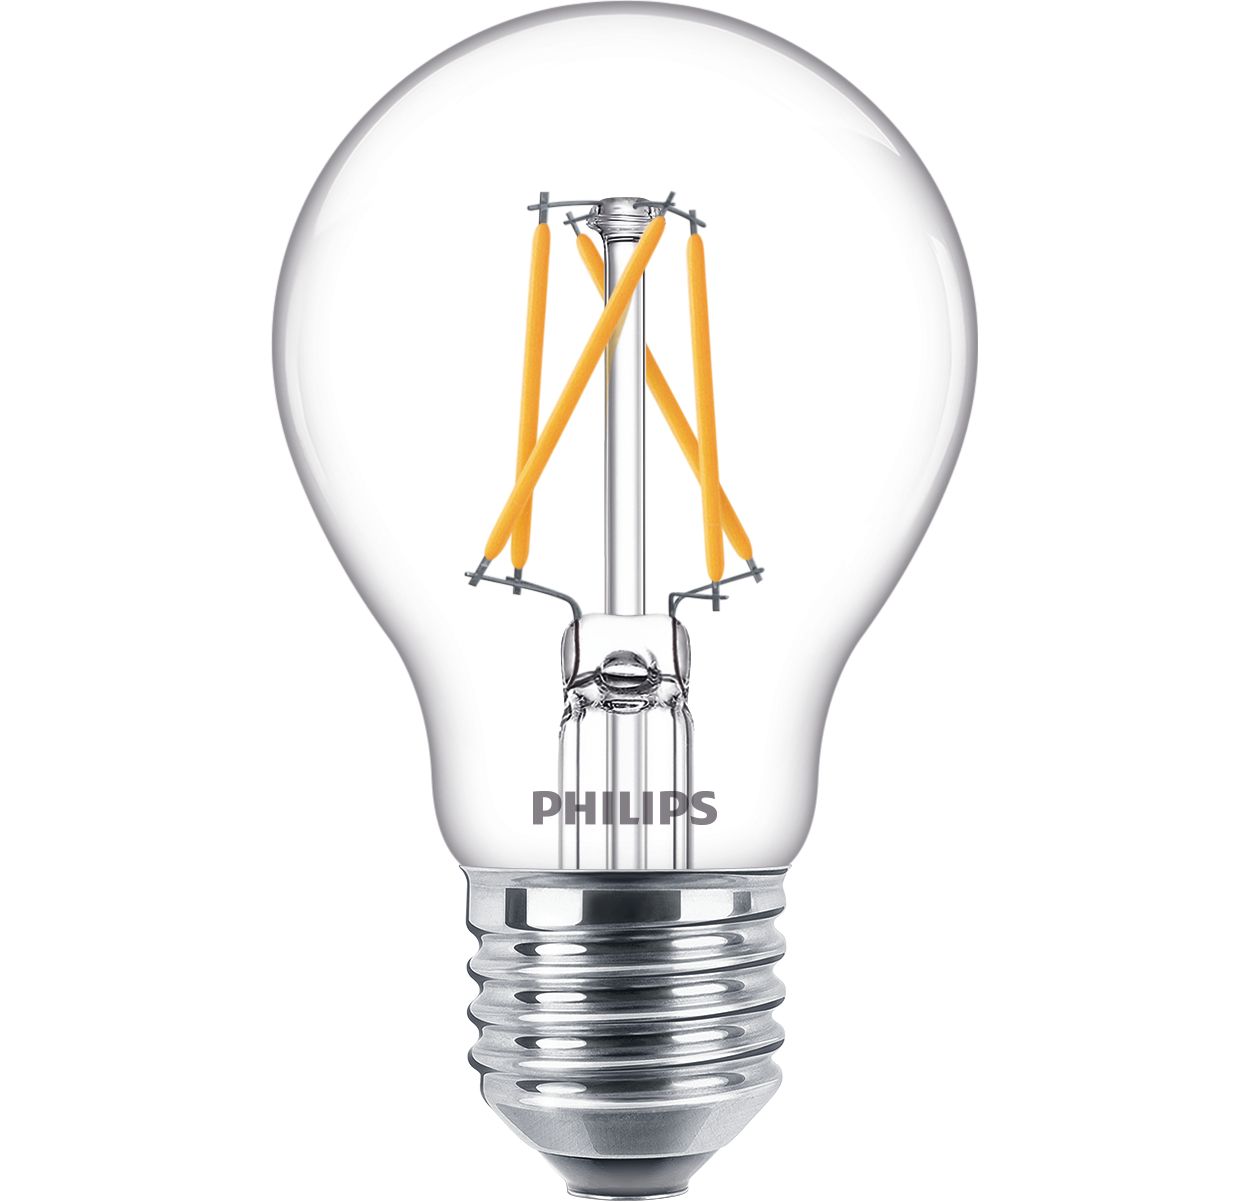 Ultramoderne LED-lamp voor in huis